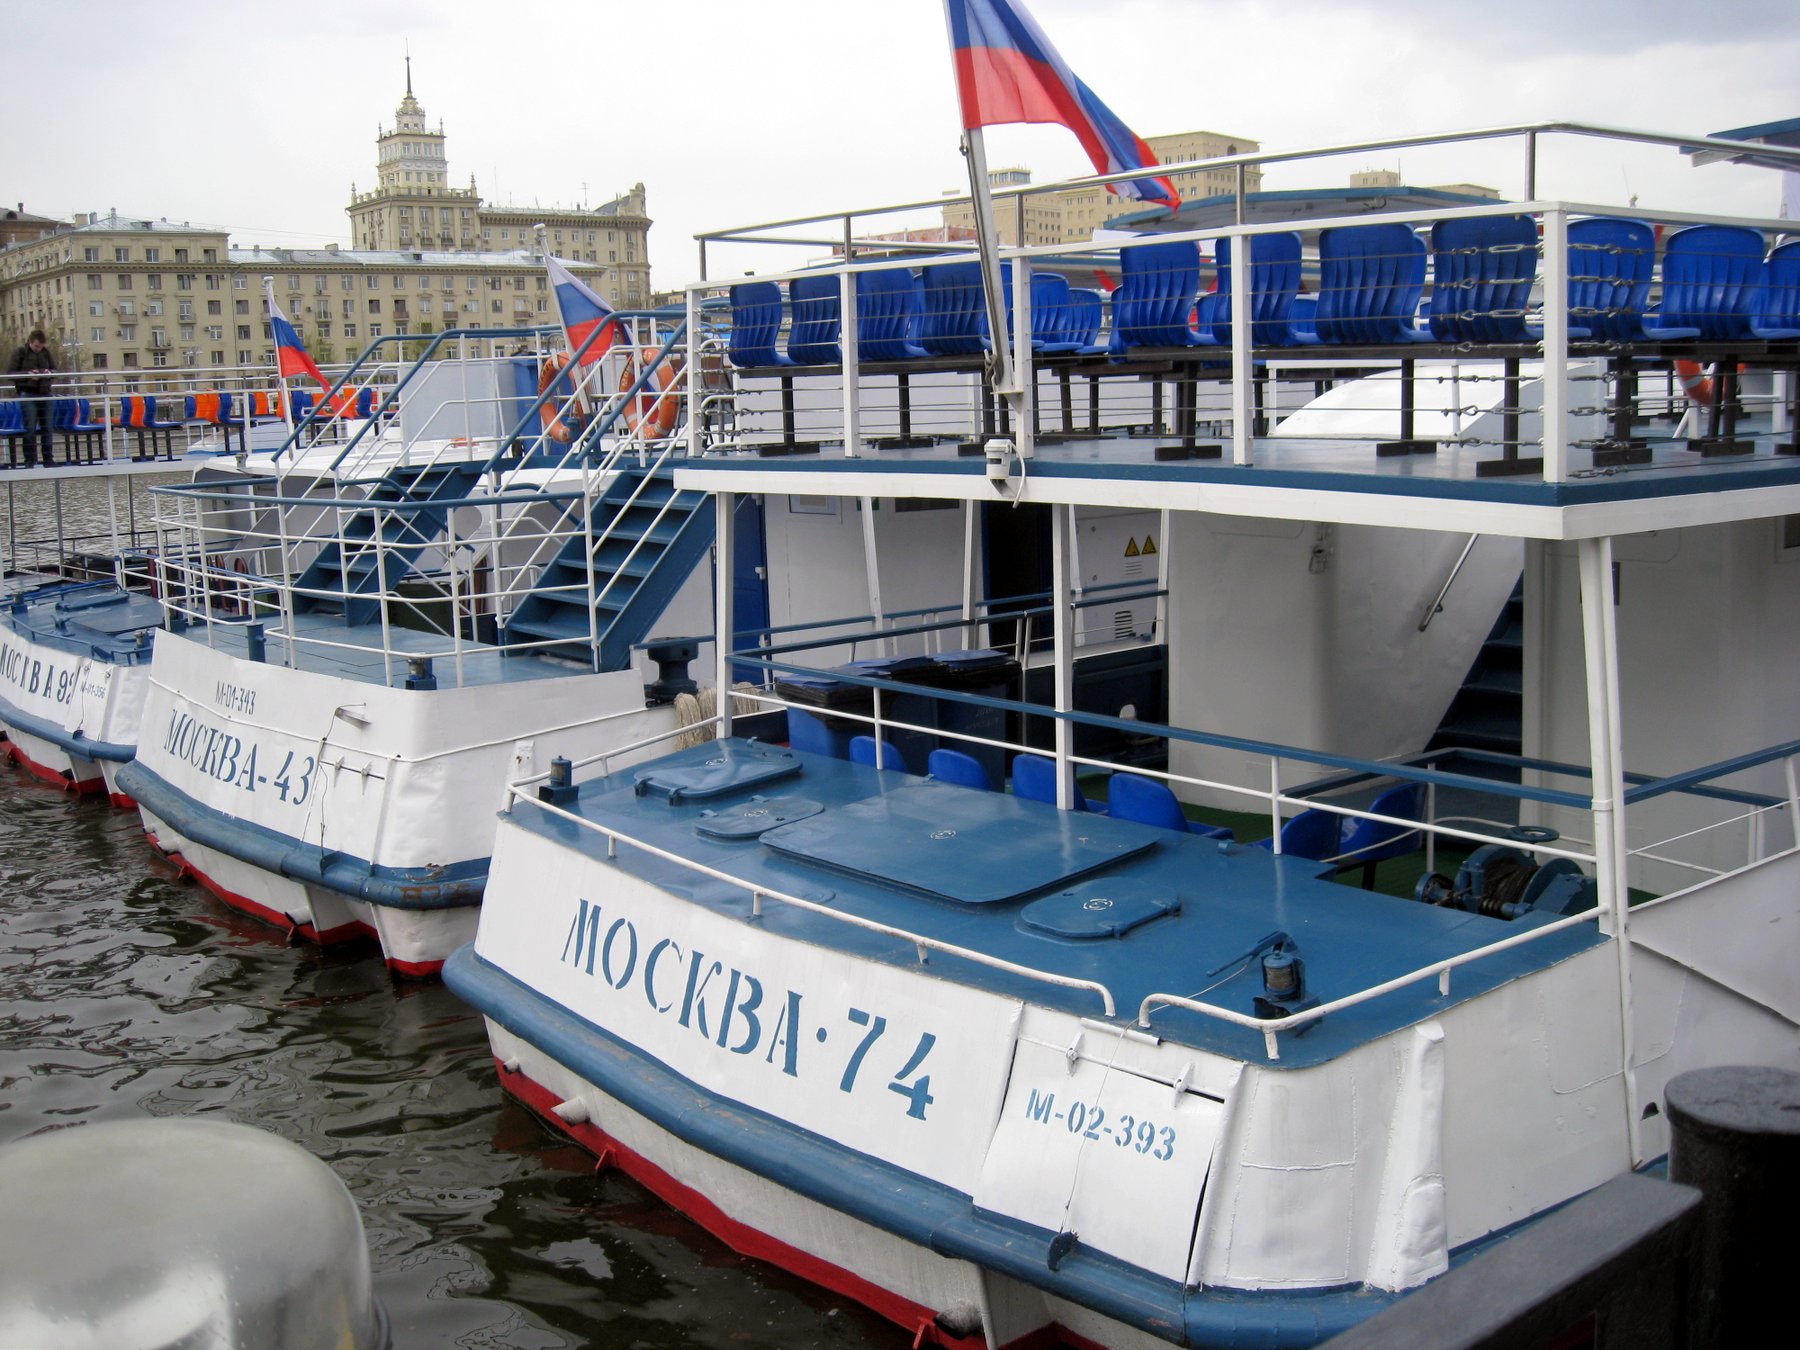 Парад речных судов разных эпох впервые пройдет на Москве-реке 12 мая